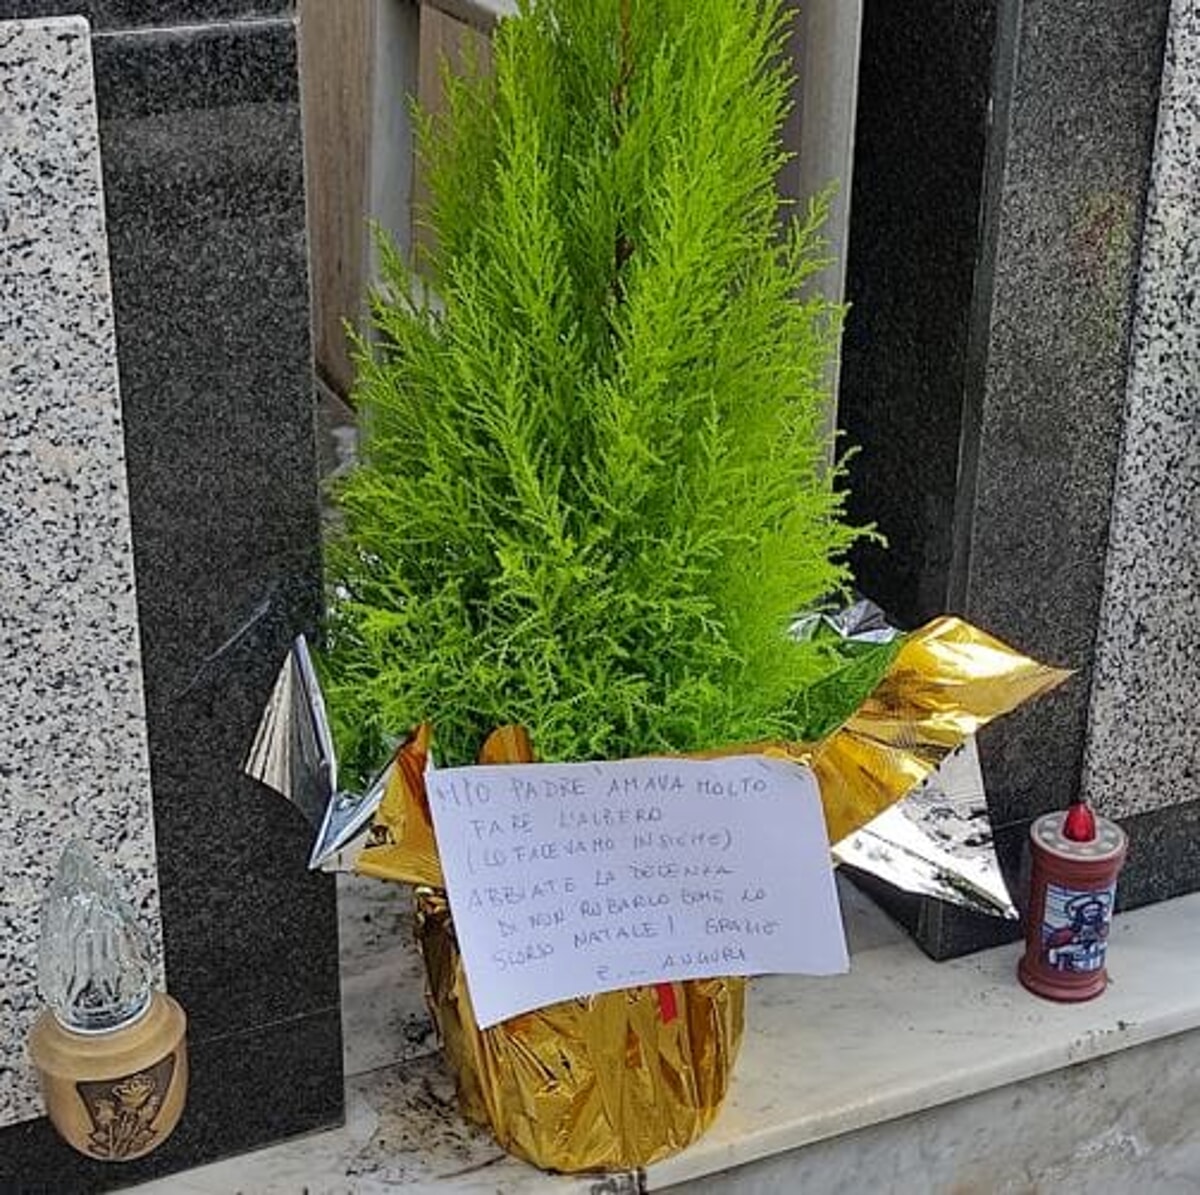 Il messaggio davanti alla tomba del padre: “L’albero di Natale gli piaceva, non rubatelo”